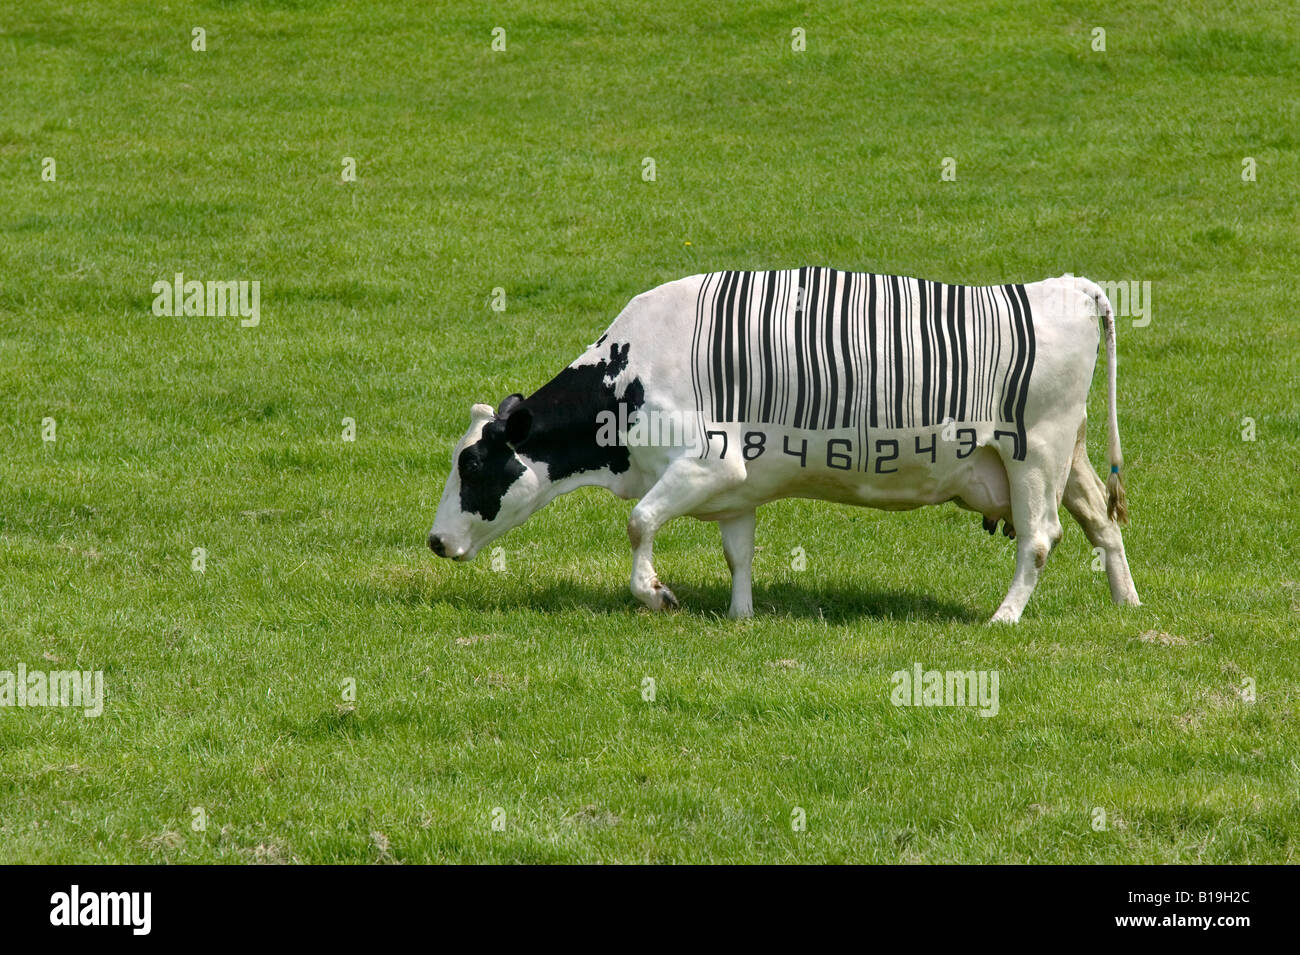 Notion de droit d'une vache laitière avec un code à barres pour les marques Banque D'Images